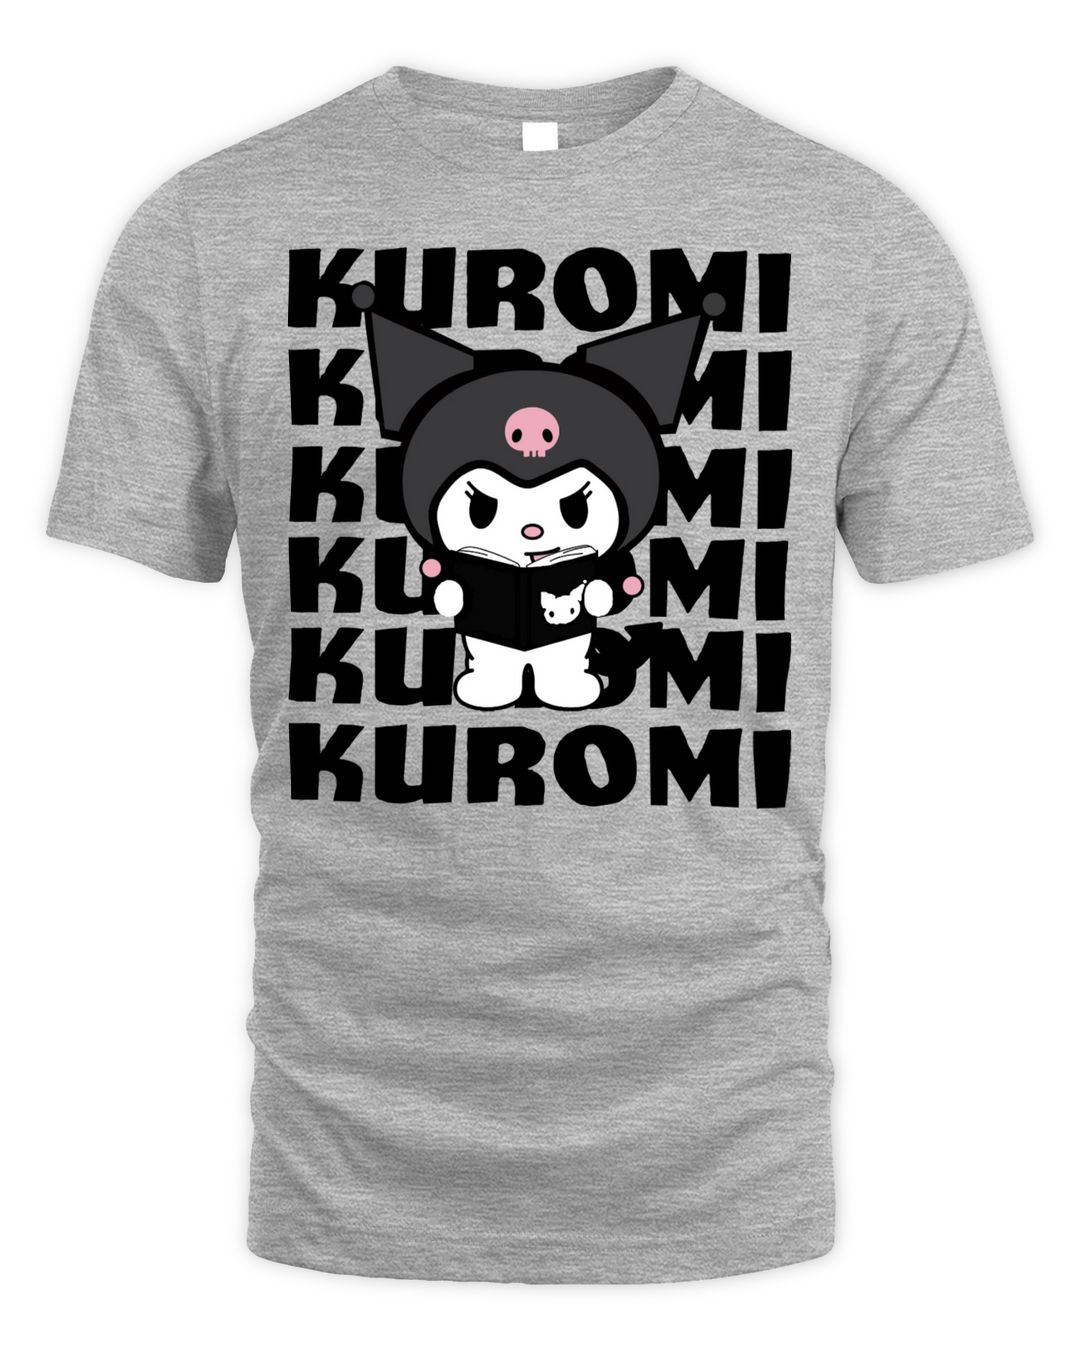 Kuromi Merch Watashi Wa Shirt